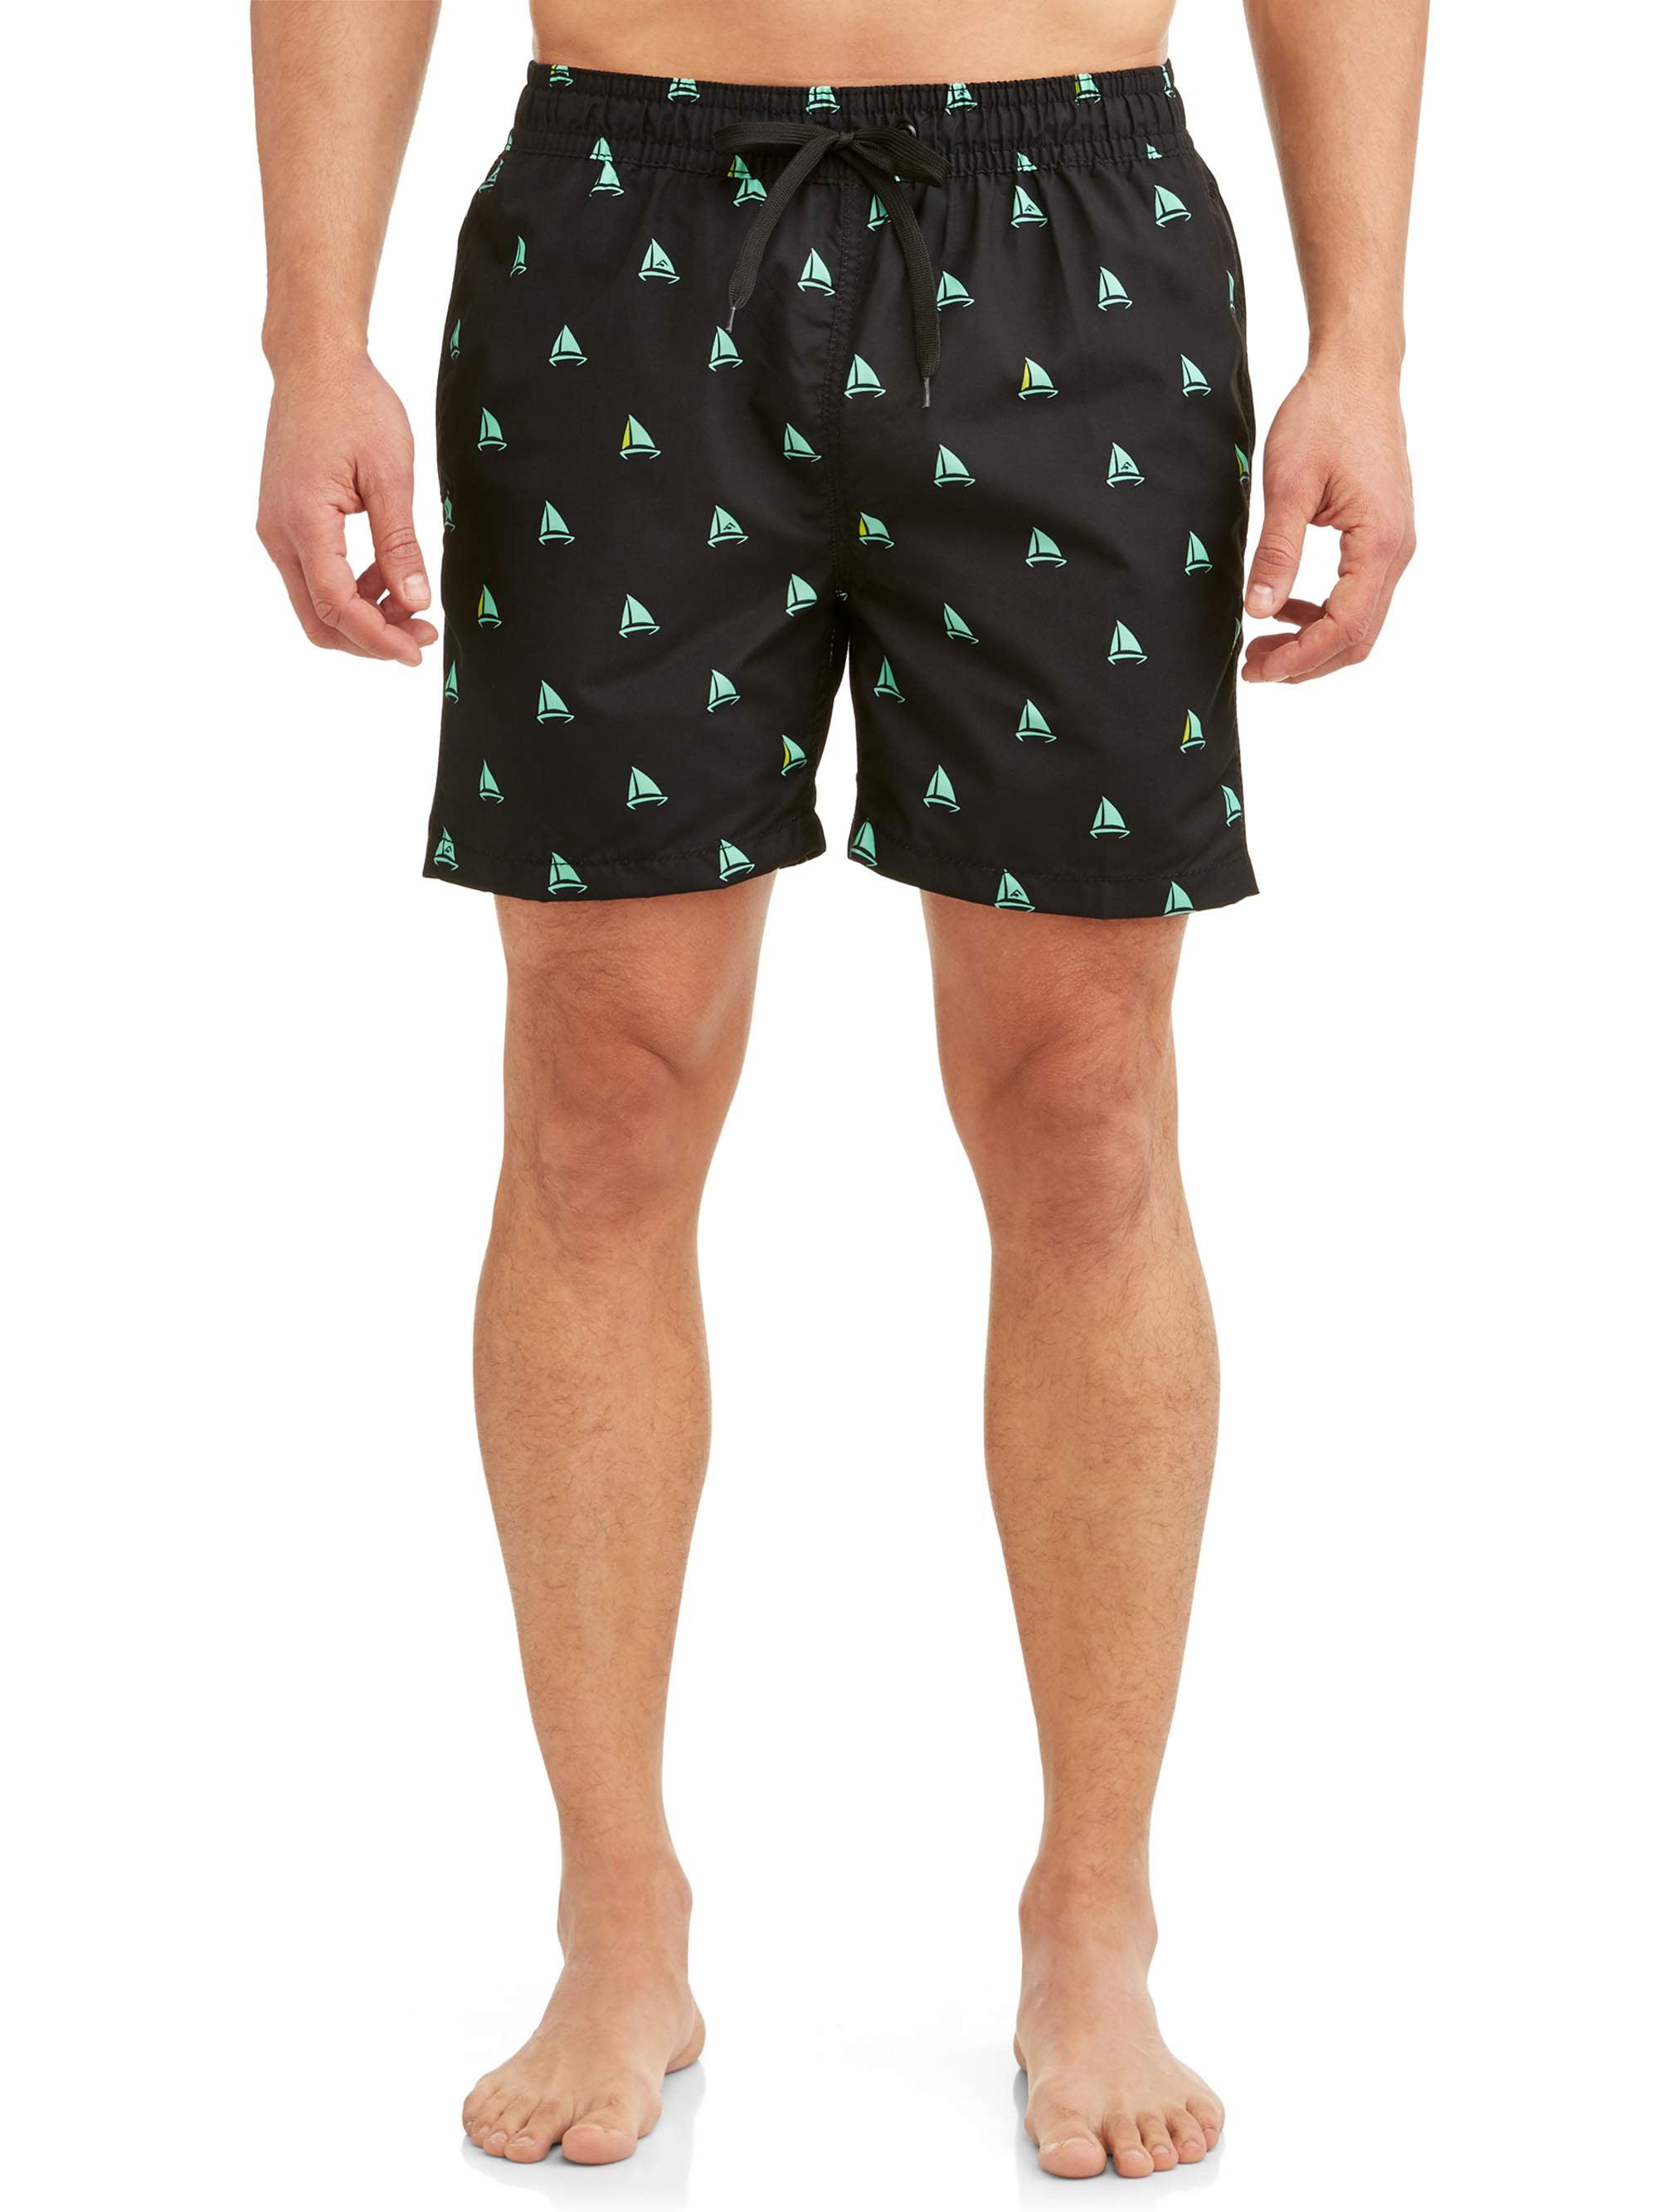 Kanu Surf Men's Regatta Print Short Trunk Swimsuit - Walmart.com